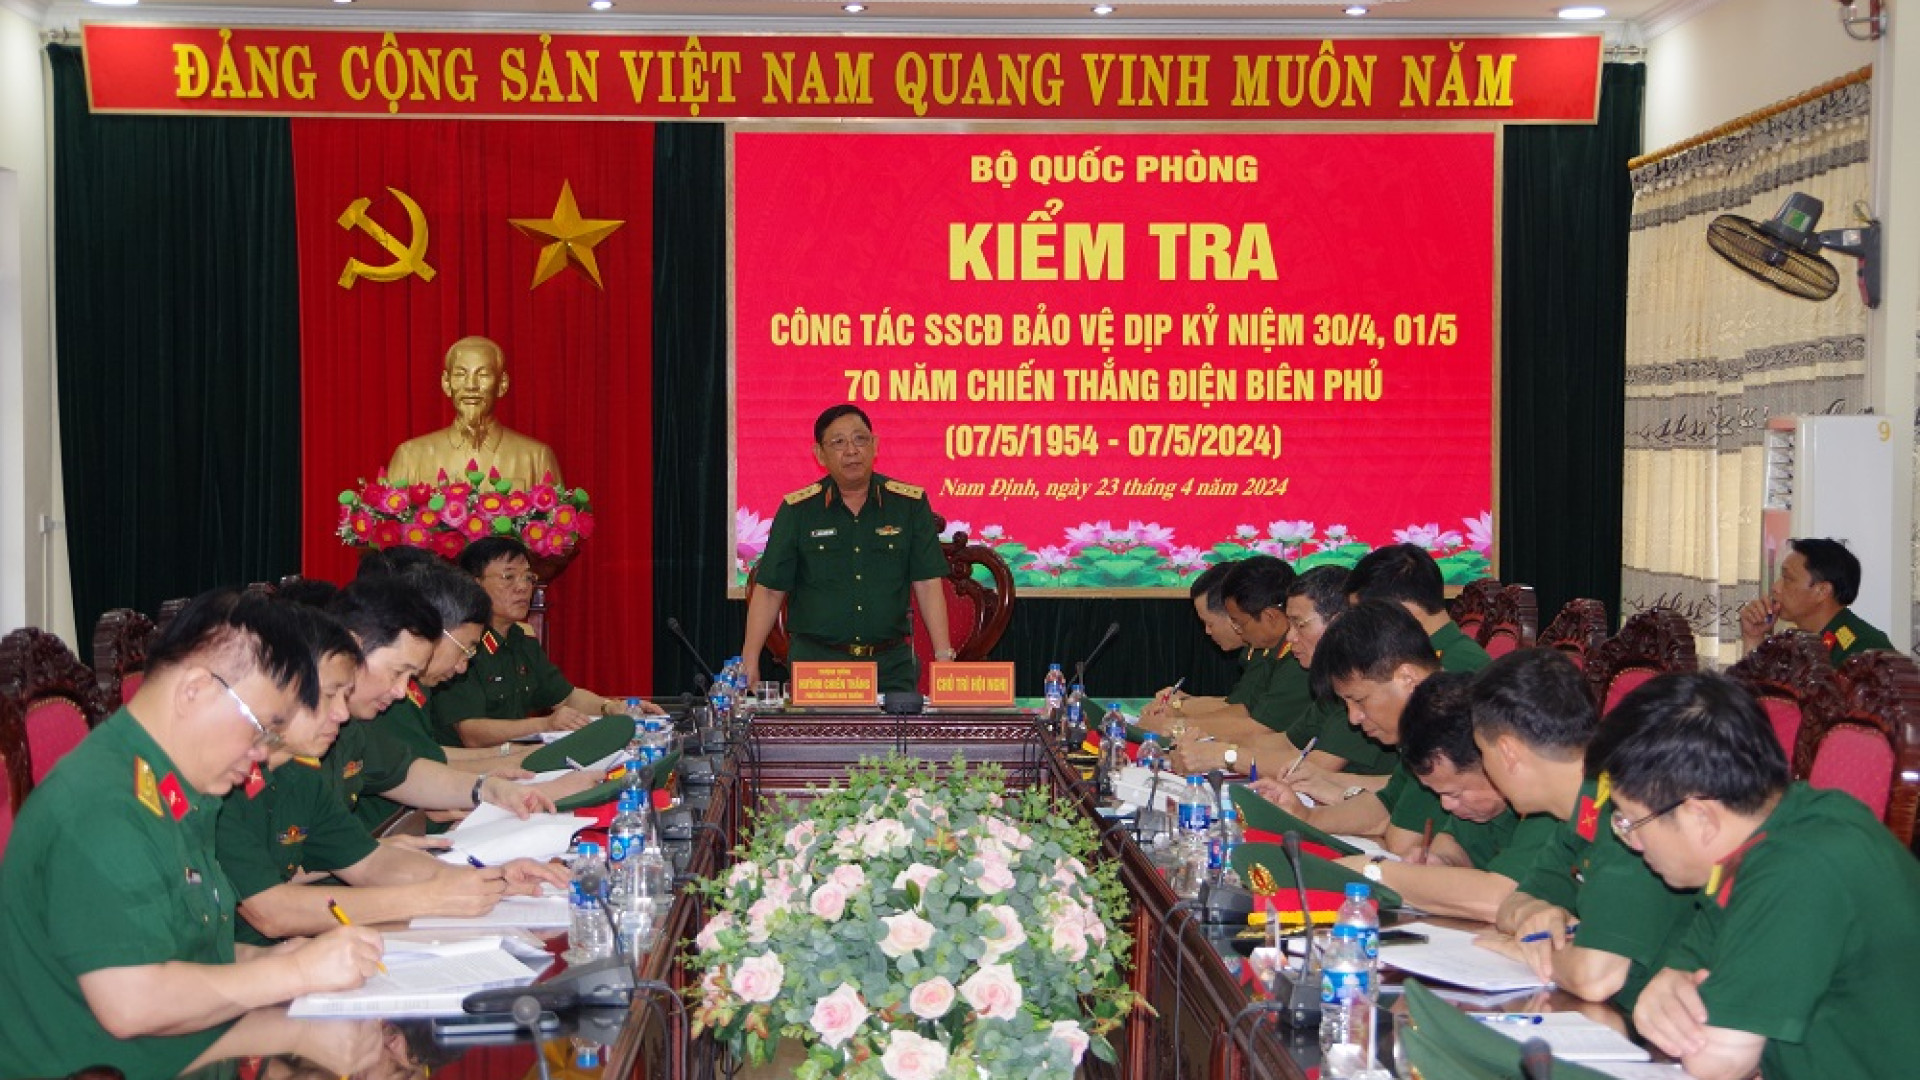 Bộ Quốc phòng kiểm tra công tác SSCĐ tại Bộ CHQS tỉnh Nam Định